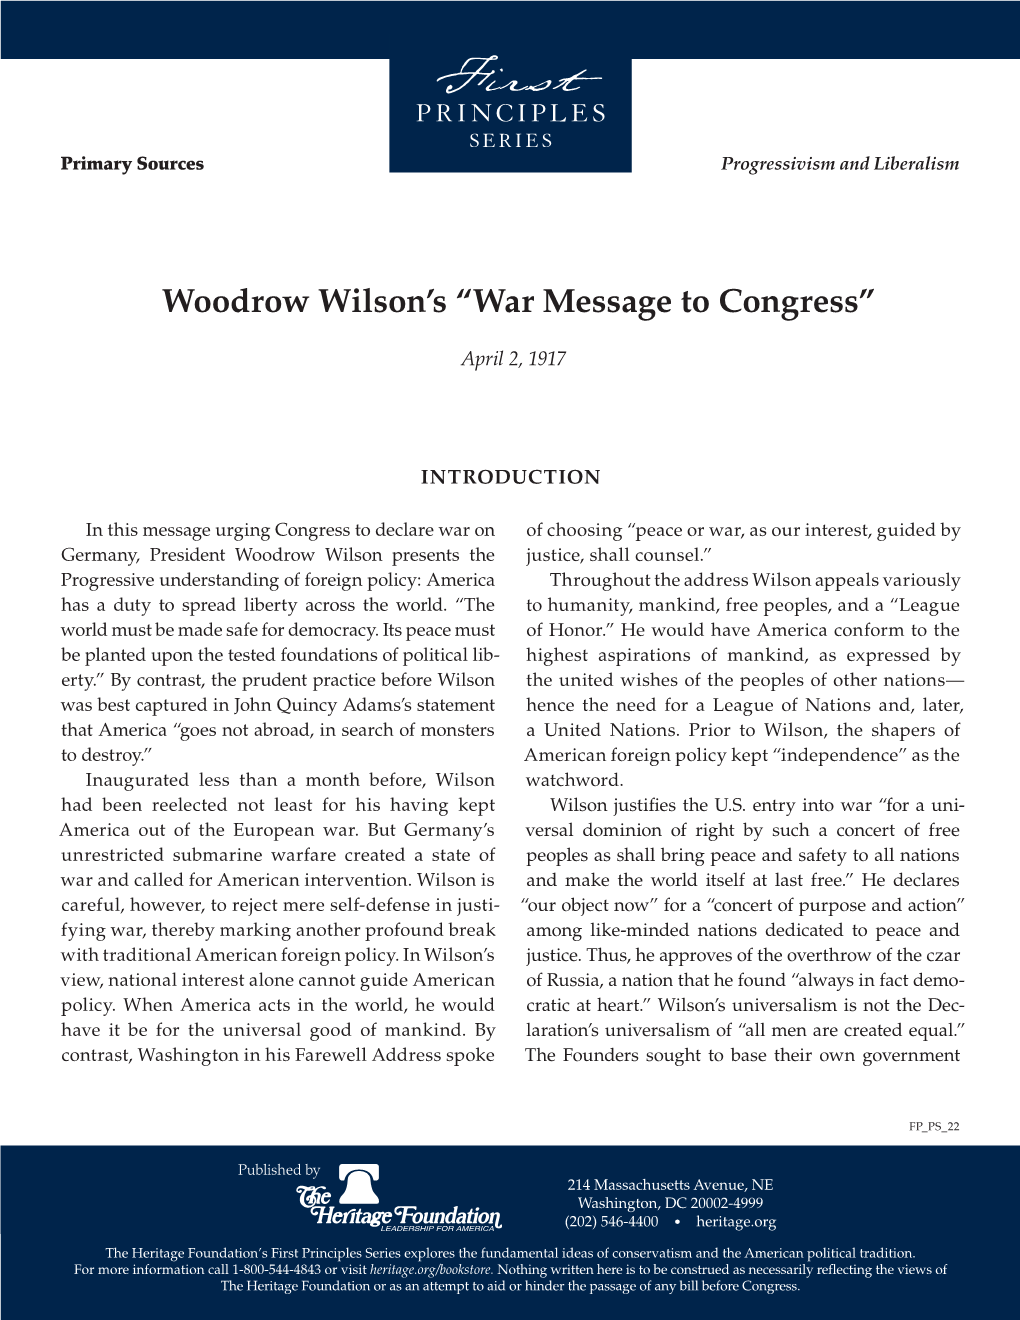 War Message to Congress”